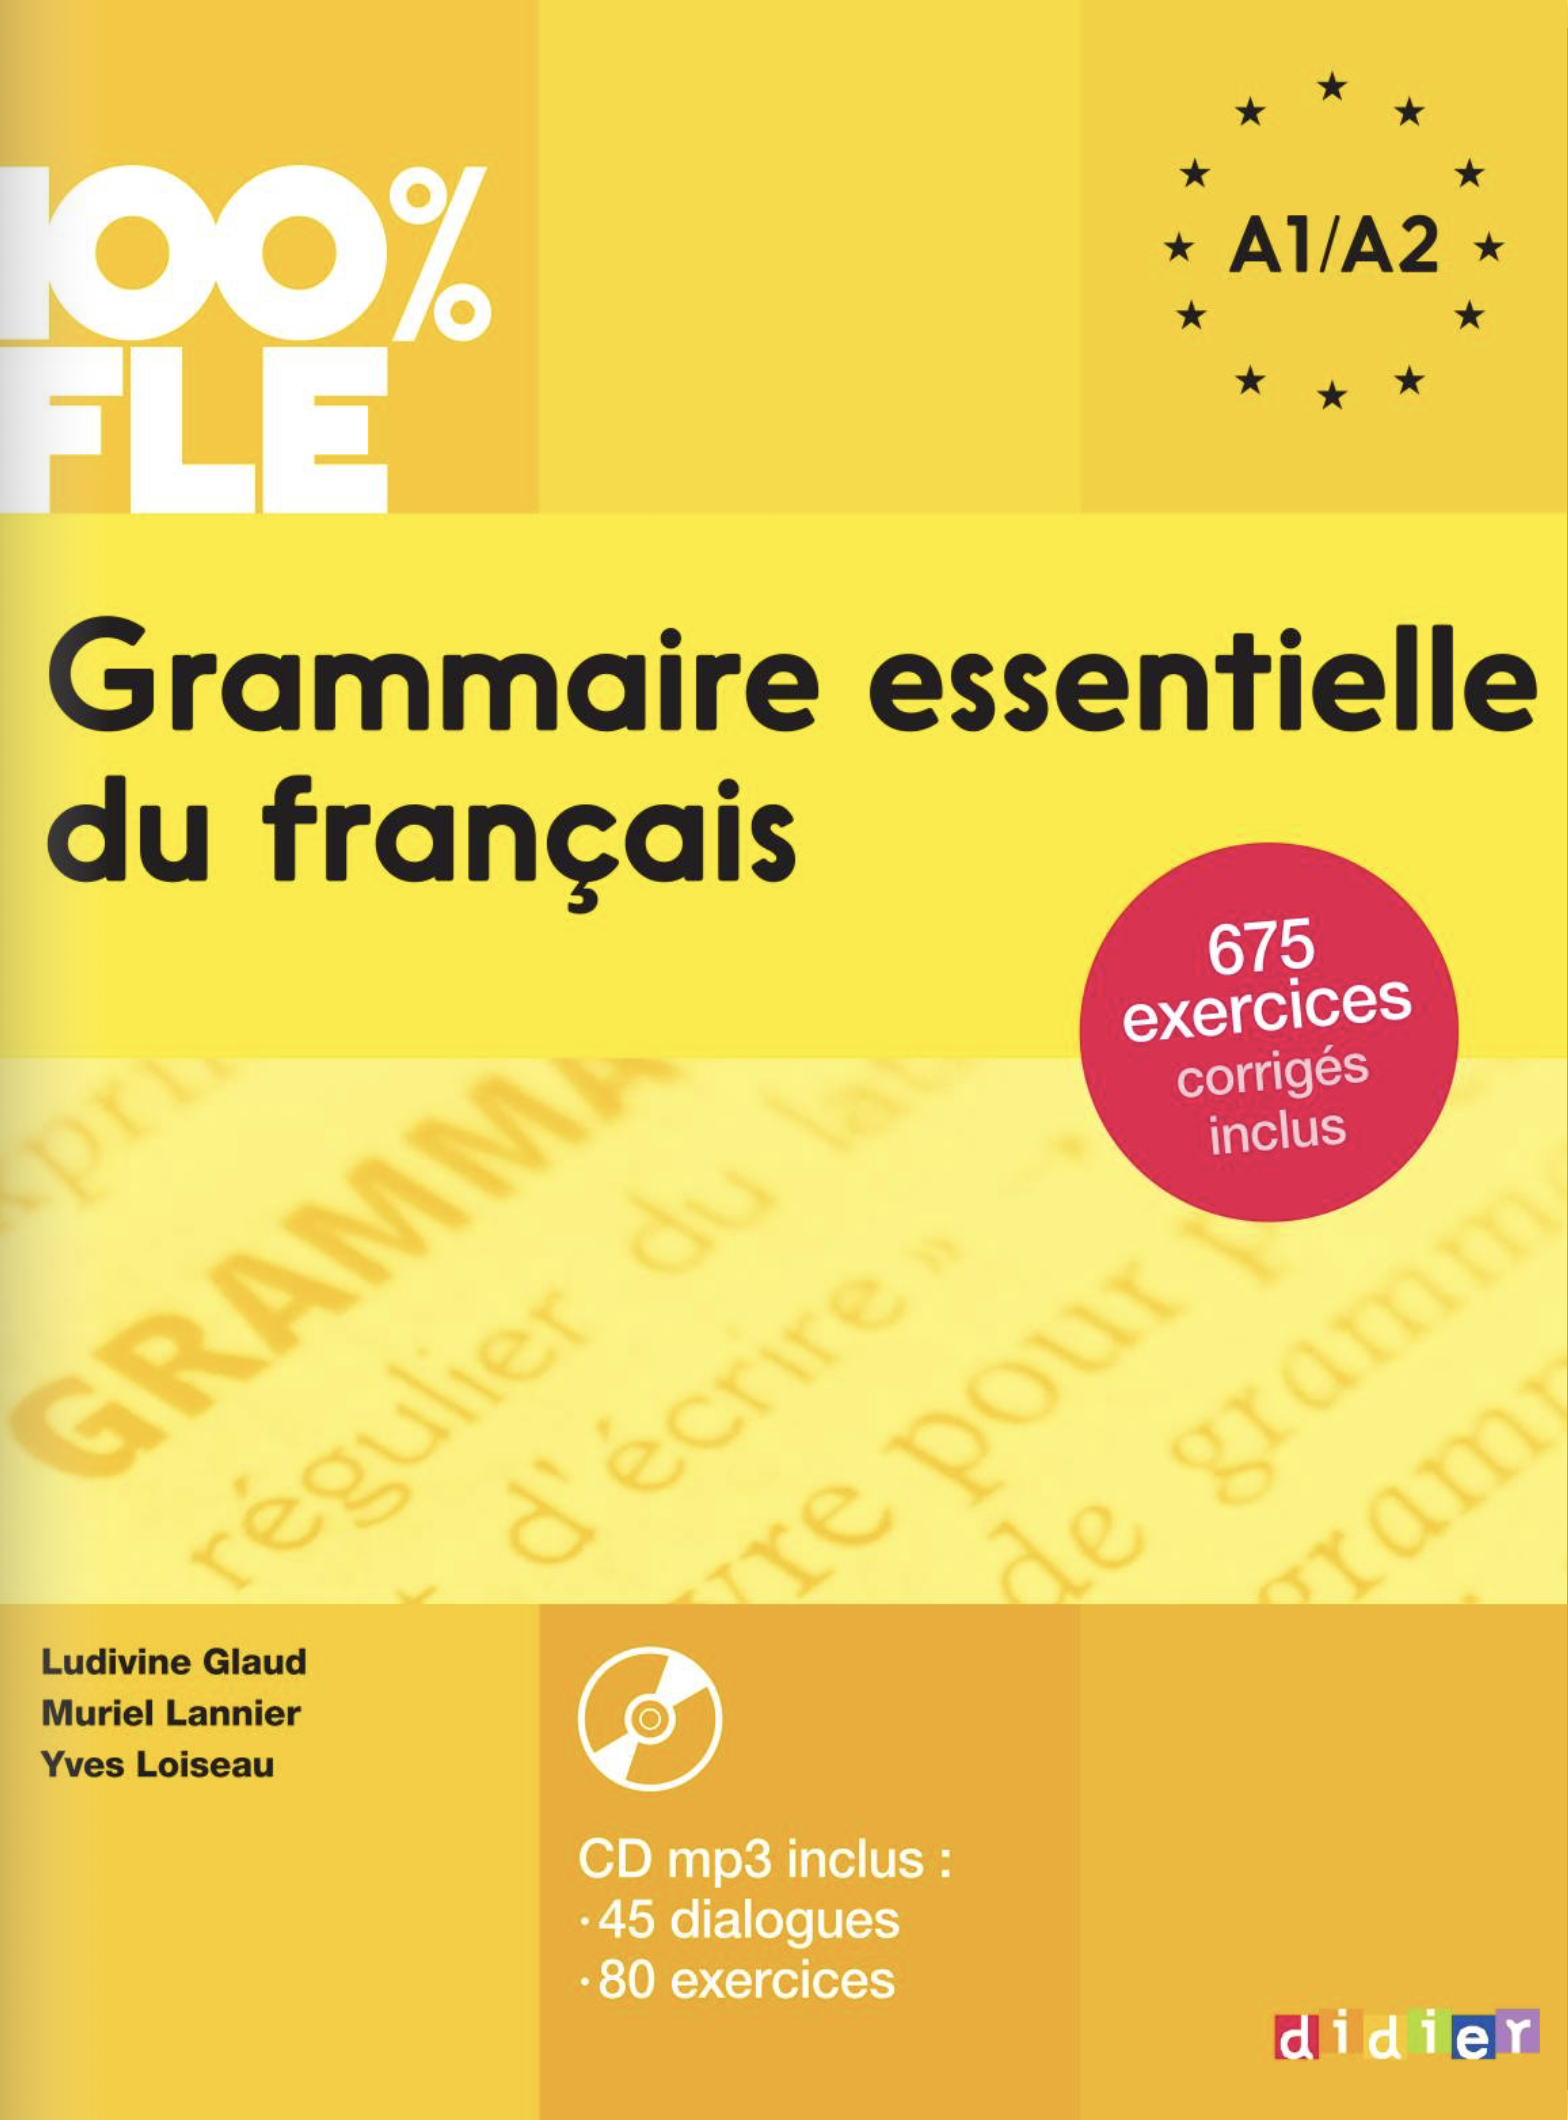 100% FLE - Grammaire essentielle du français (A1-A2) 